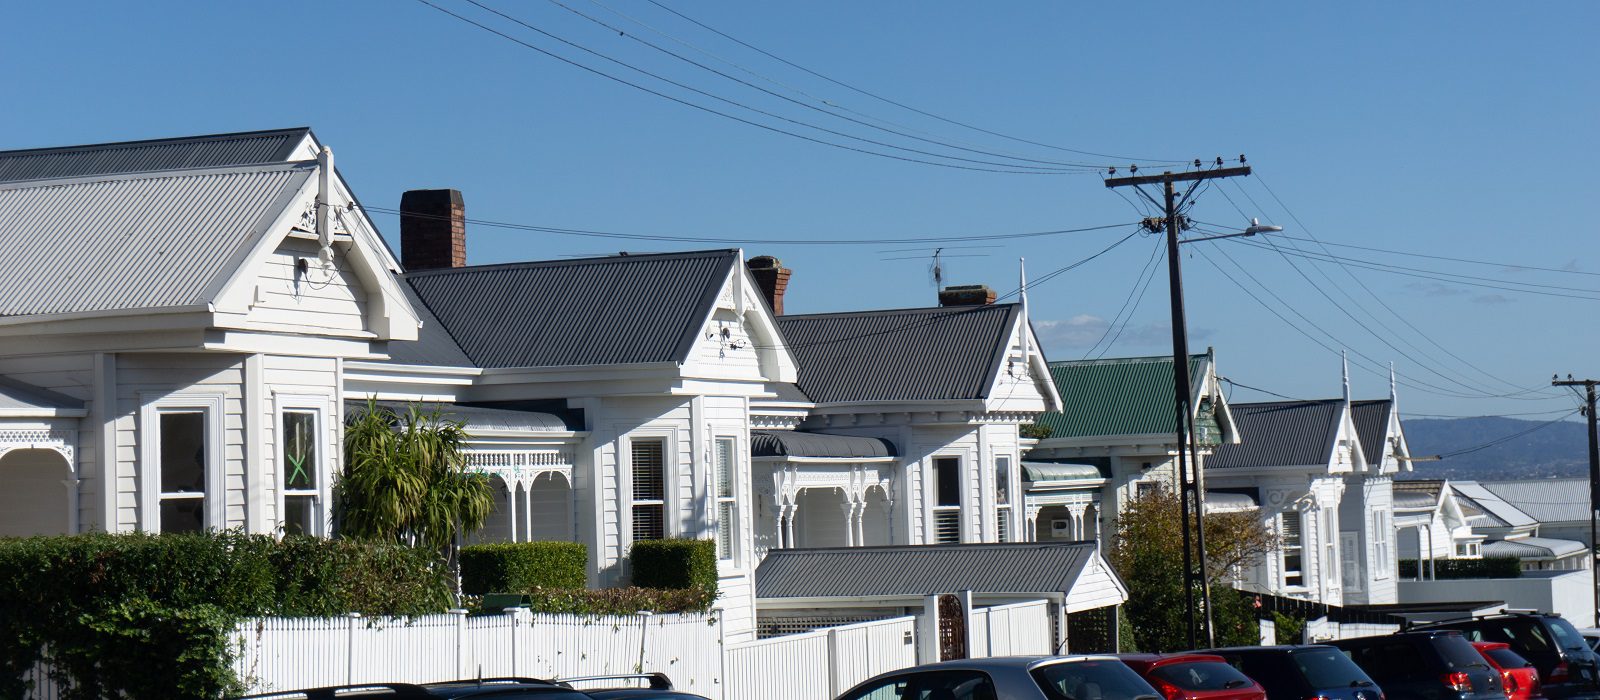 ニュージーランド、オークランドのポンソンビーにある伝統的で確立された都市郊外の通りにある 1940 年代の住宅別荘の切妻の列。